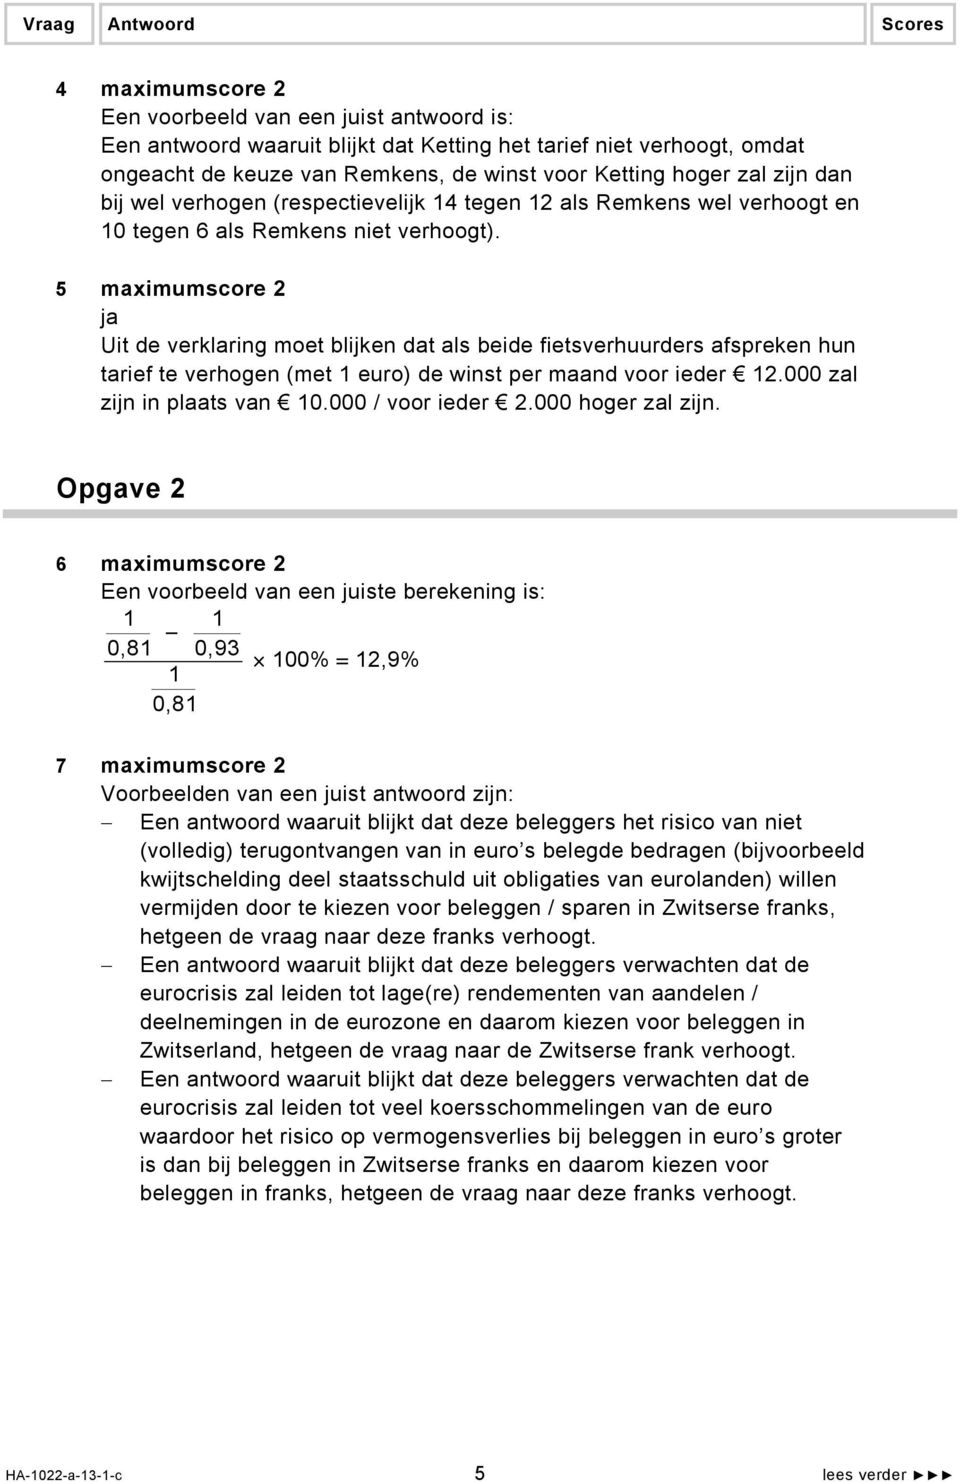 5 maximumscore 2 ja Uit de verklaring moet blijken dat als beide fietsverhuurders afspreken hun tarief te verhogen (met 1 euro) de winst per maand voor ieder 12.000 zal zijn in plaats van 10.